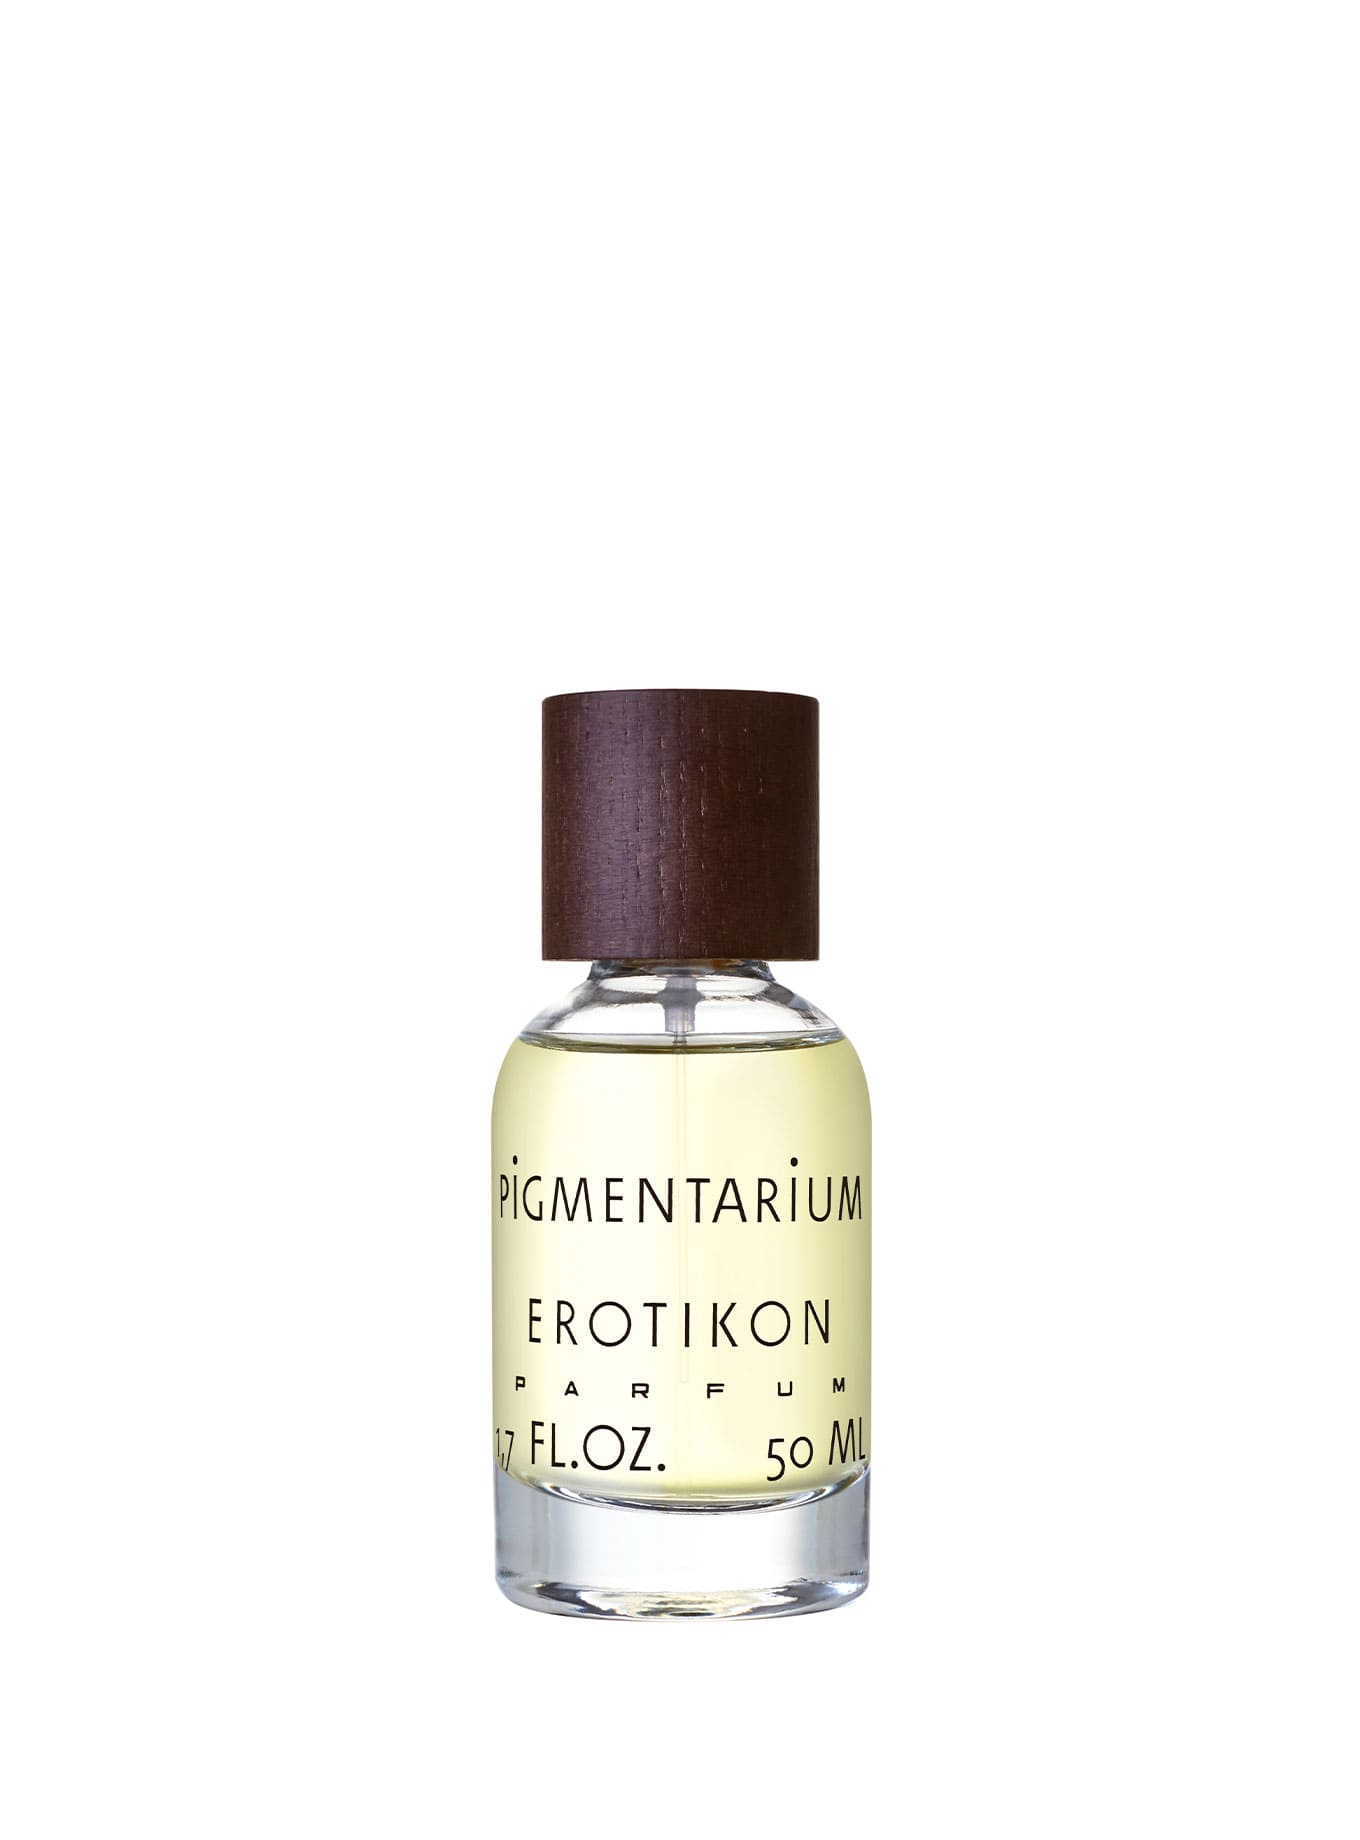 Botella de EROTIKON de Pigmentarium, eau de parfum inspirado en el film de Gustav Machatý, con tonos oscuros que evocan seducción y pasión.